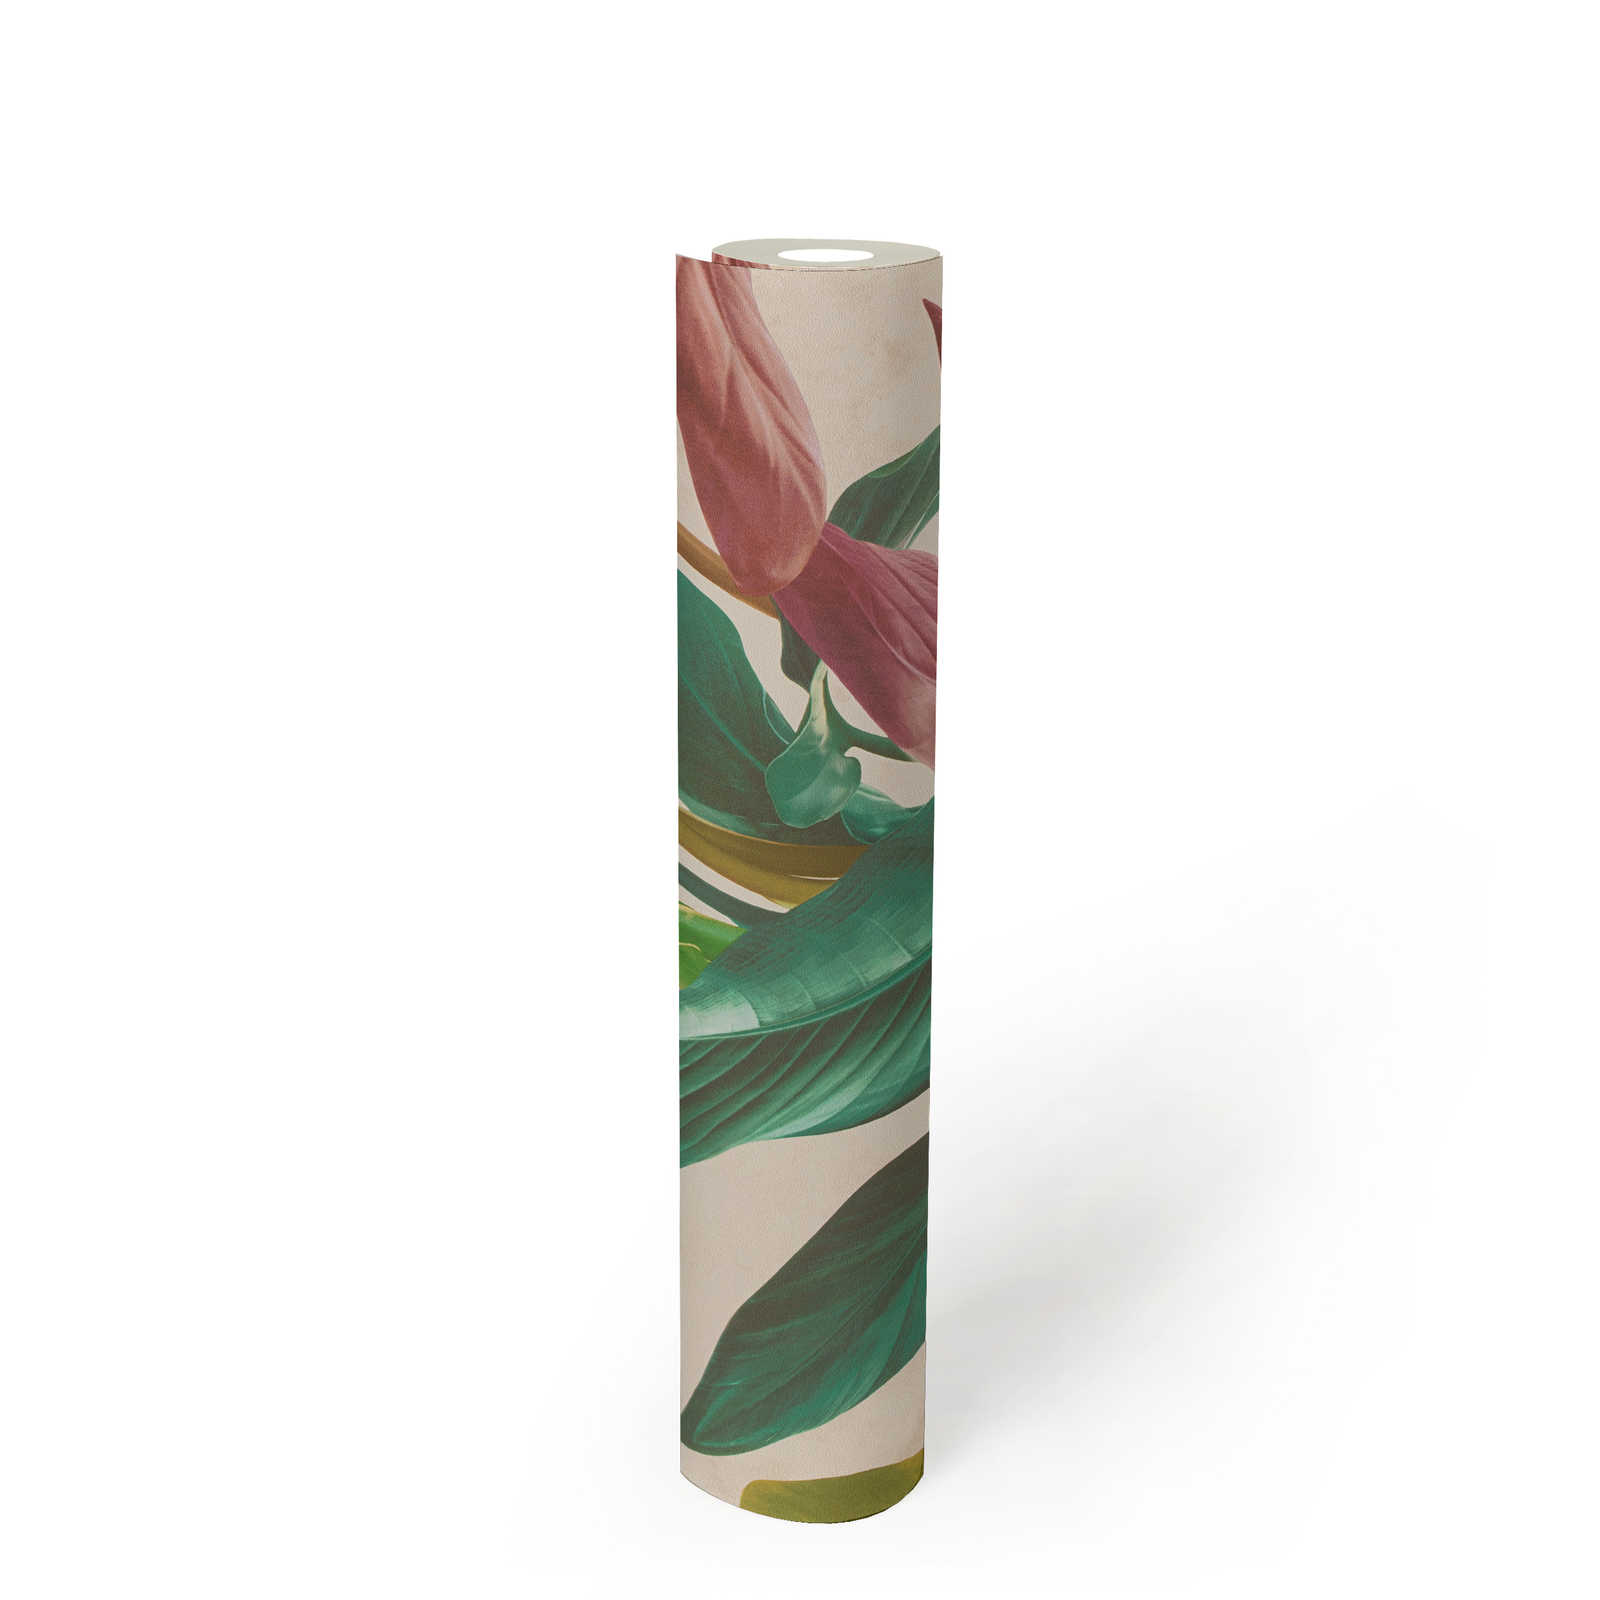             Behang met bladmotief in heldere kleuren - kleurrijk, crème, groen
        